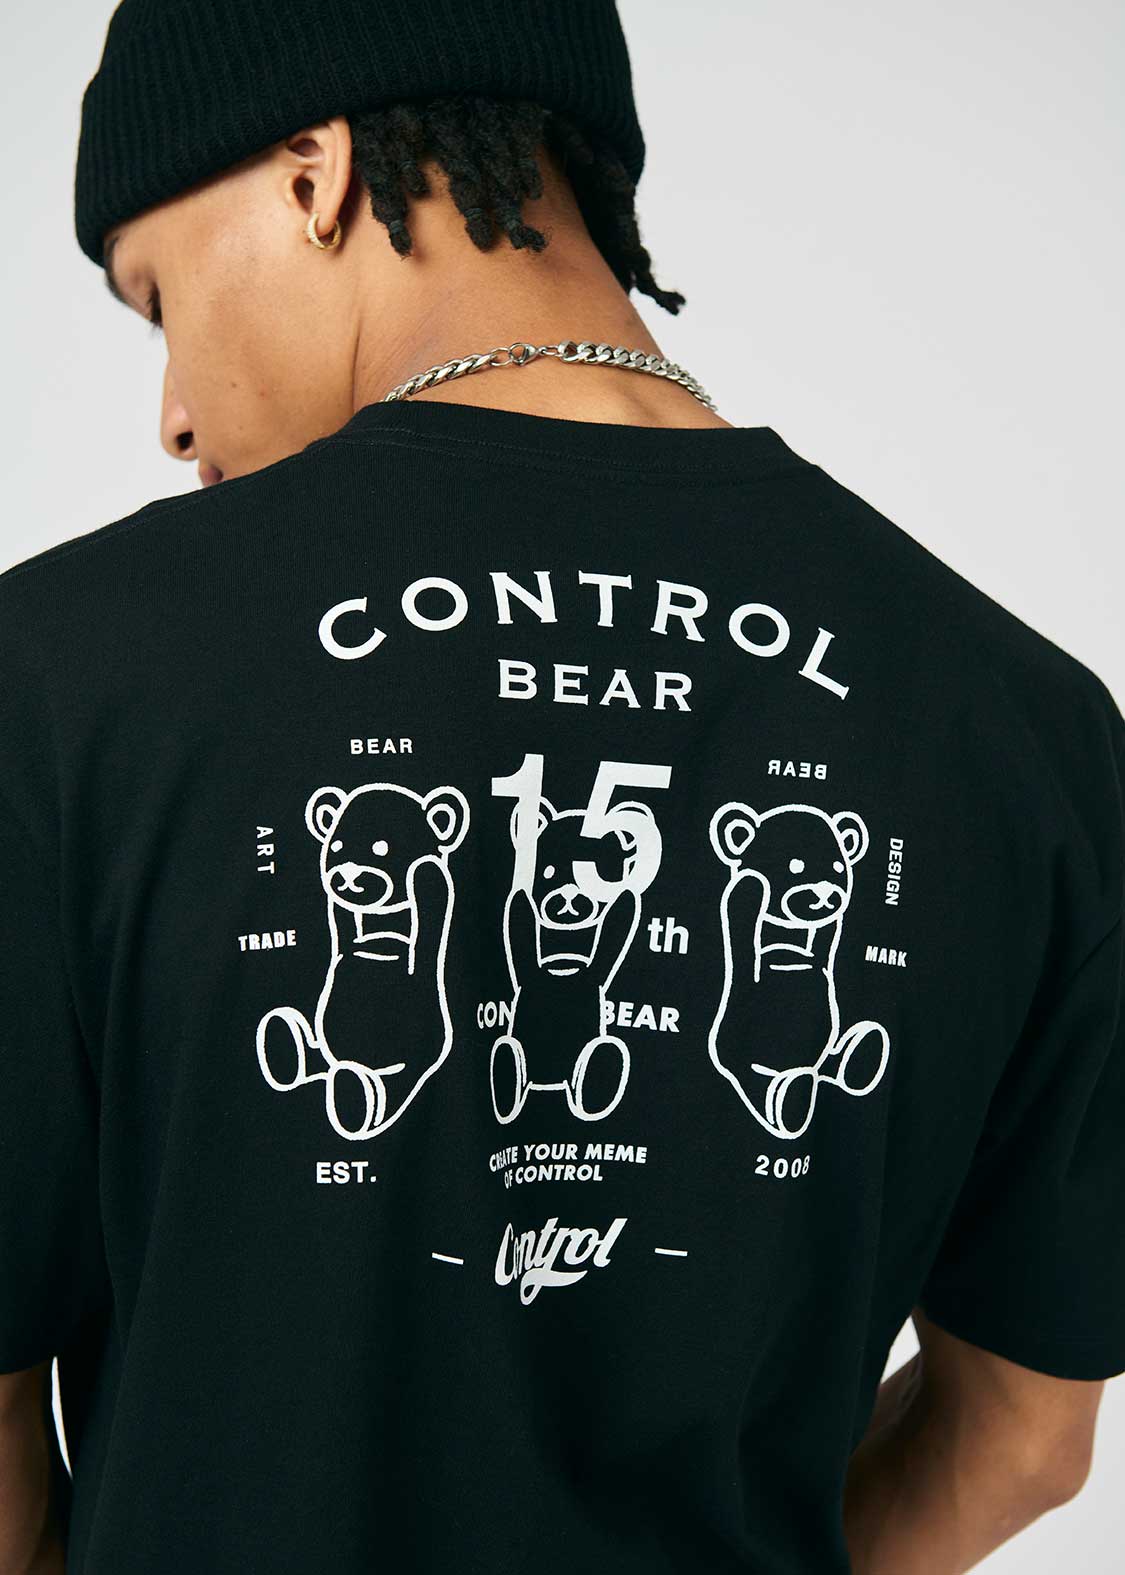 Control Bear 15th Anniversary Black Tshirt